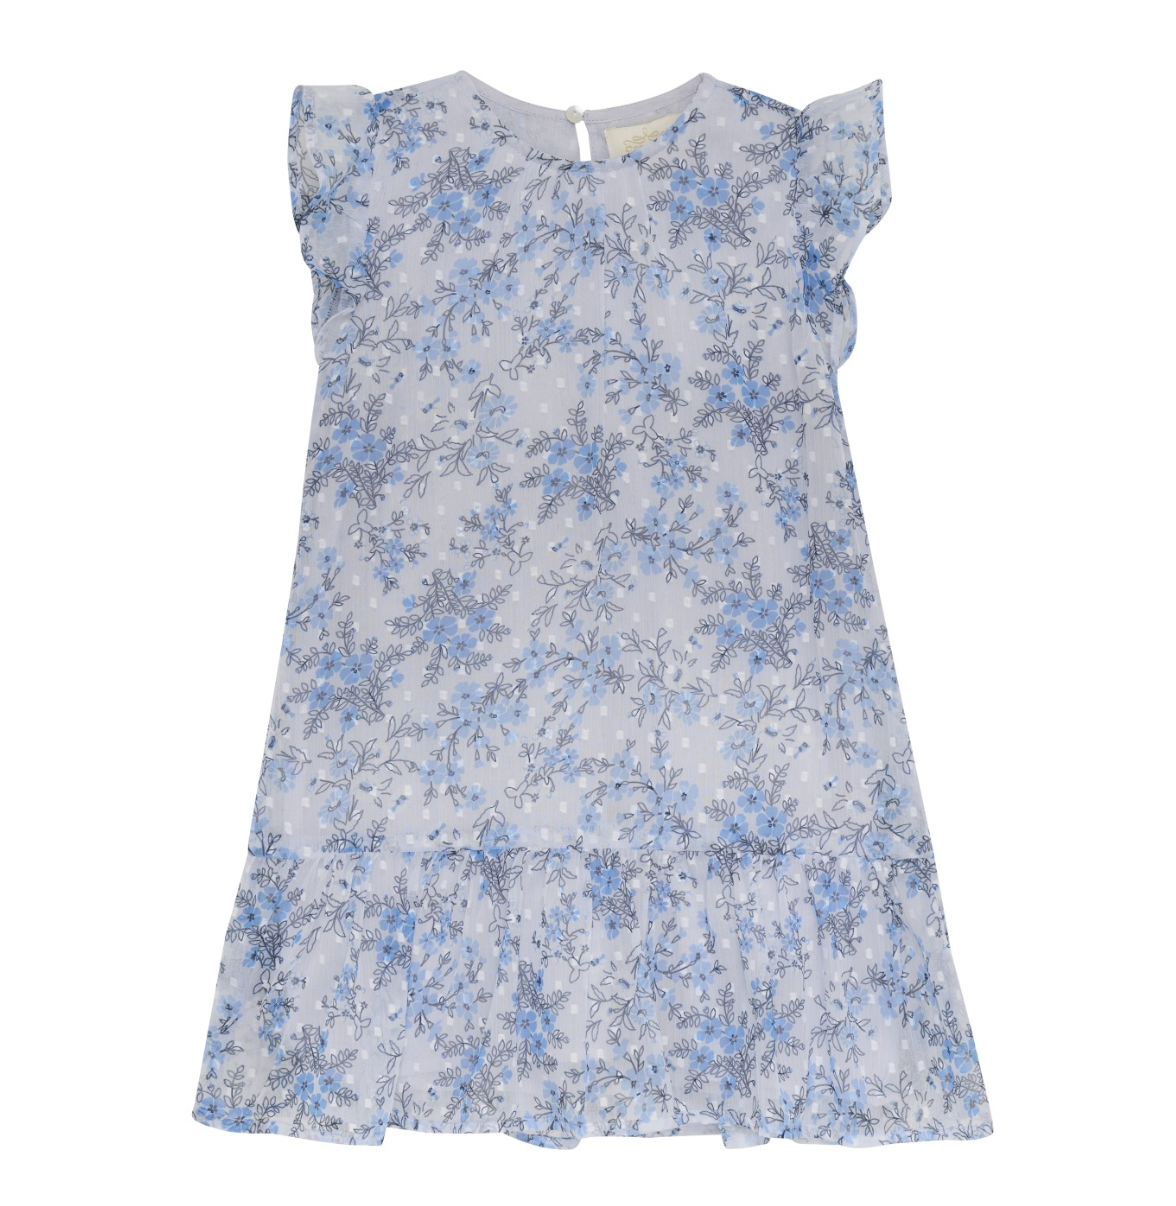 Drop Waist Dress, Blue Floral - Magpies Paducah